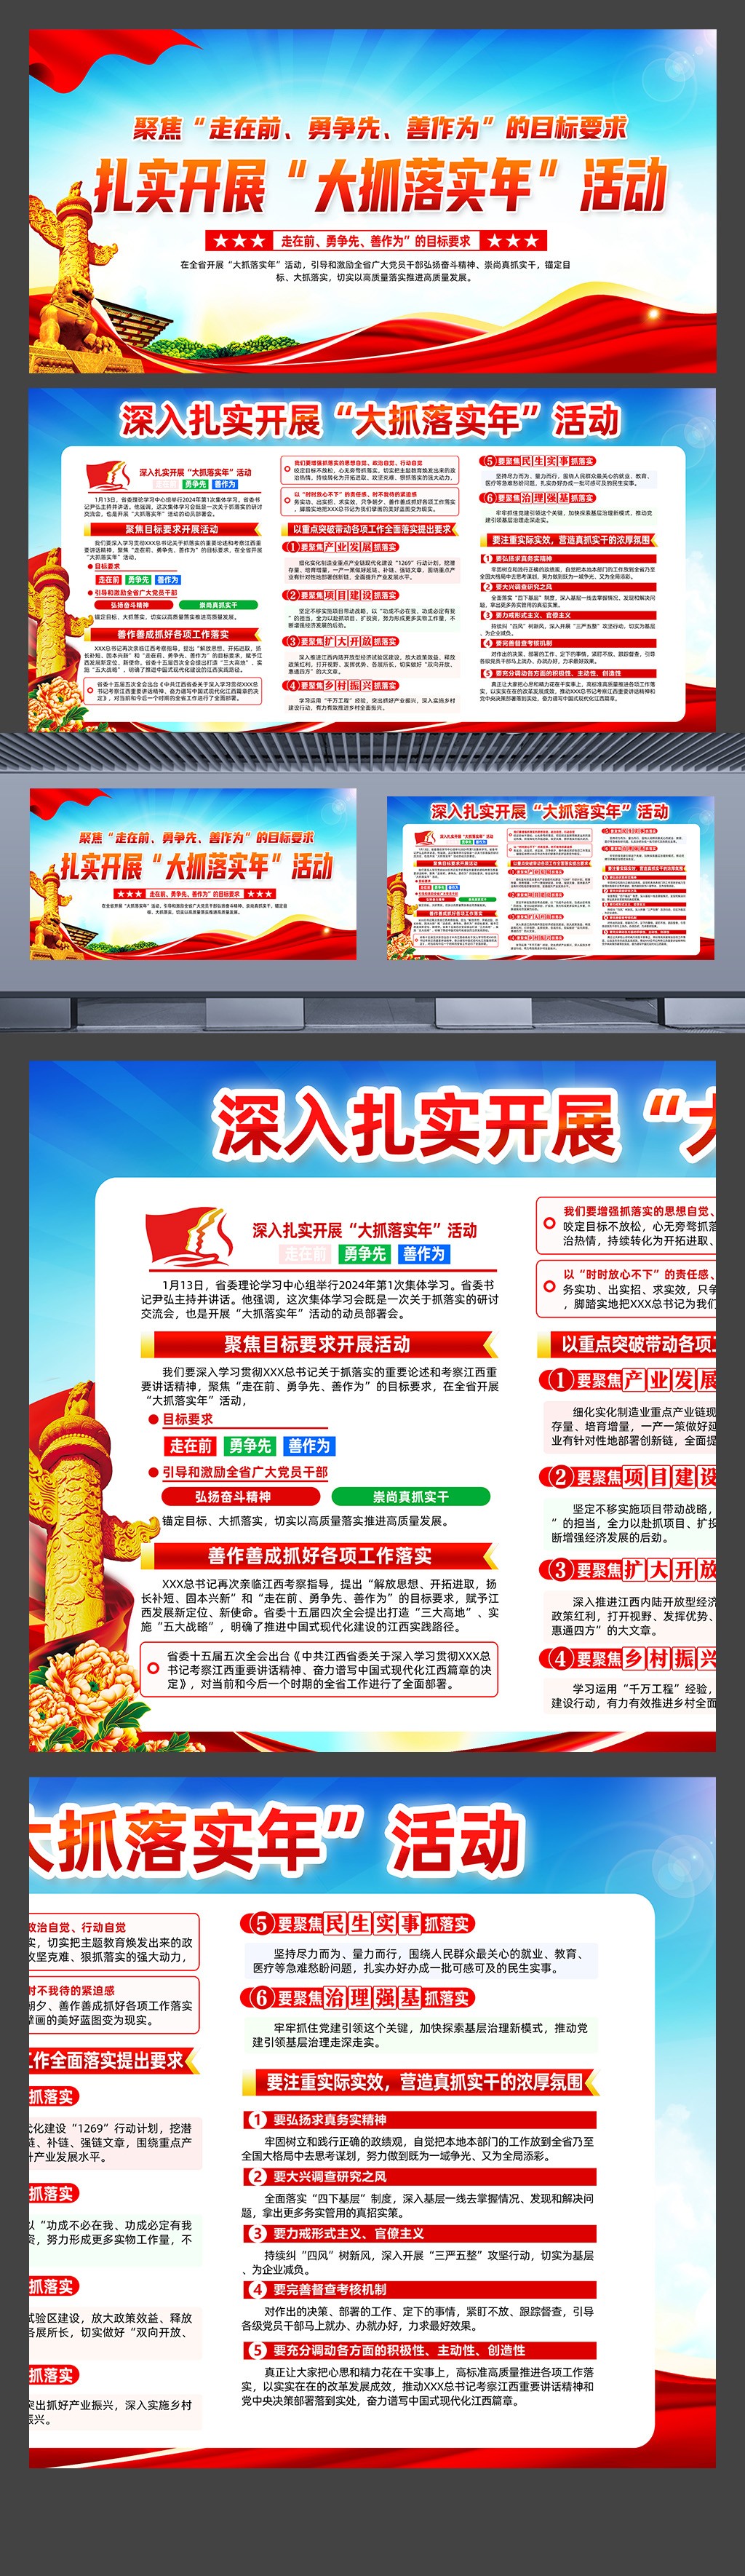 江西省大抓落实年活动展板宣传栏素材